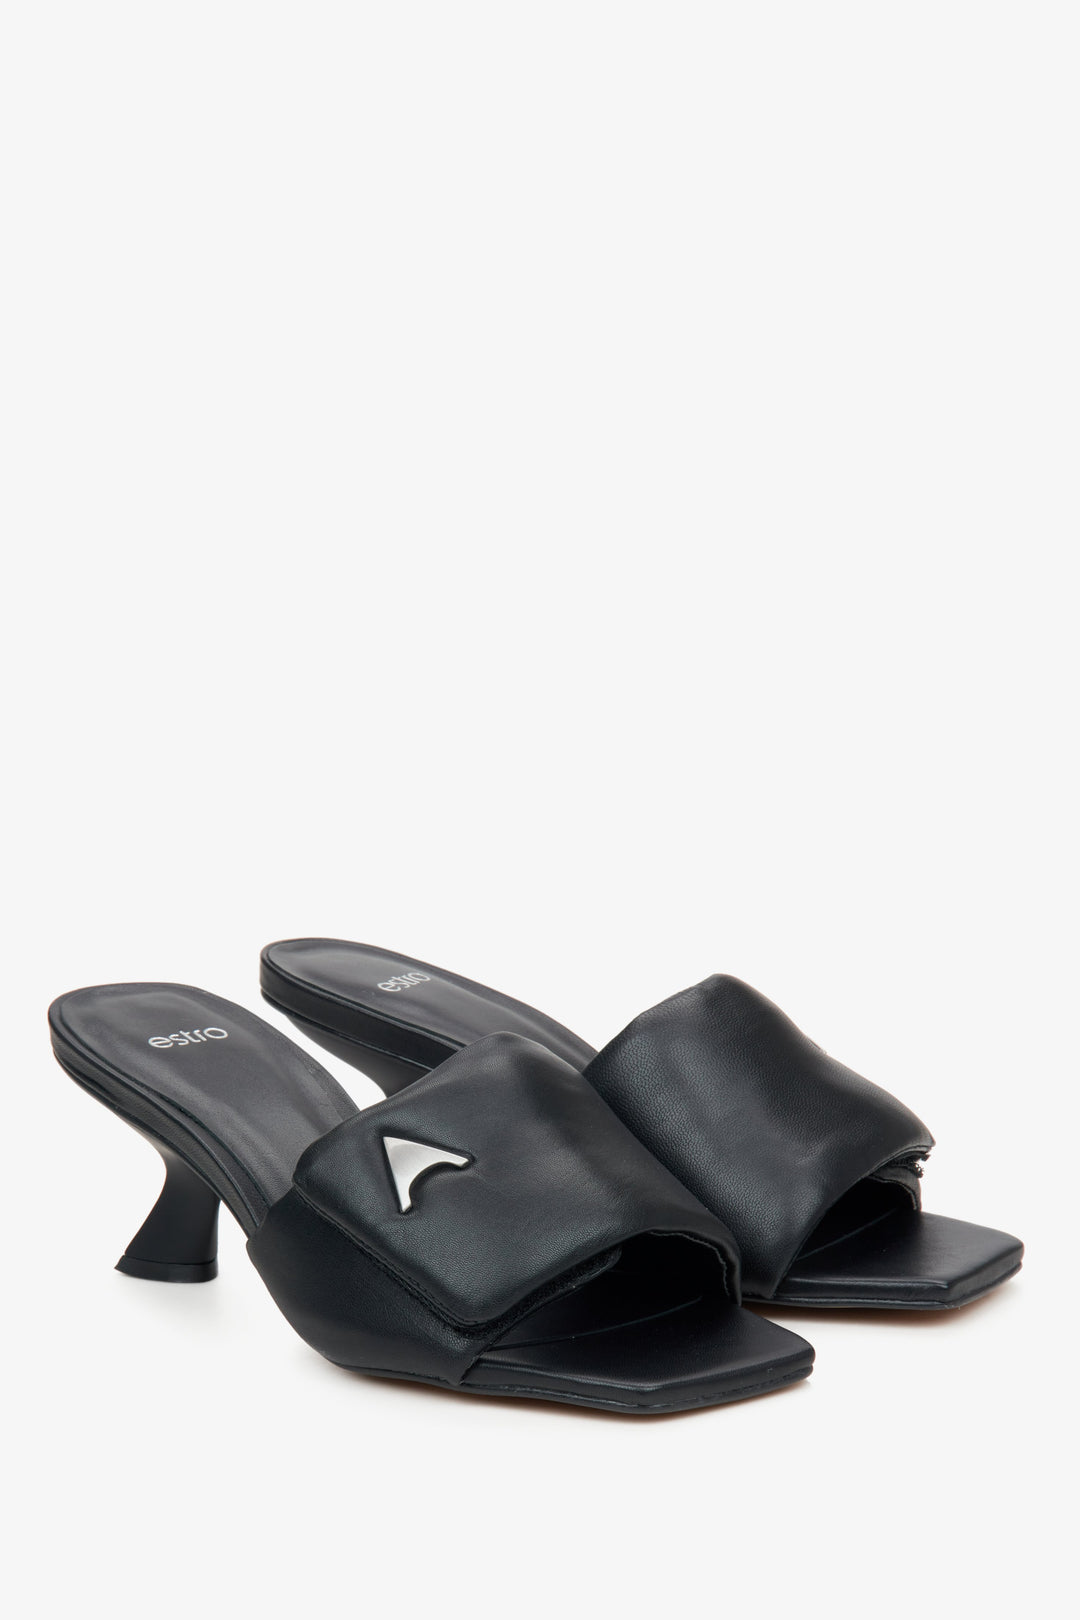 Estro Women's Black Funnel Heel Slide Sandals